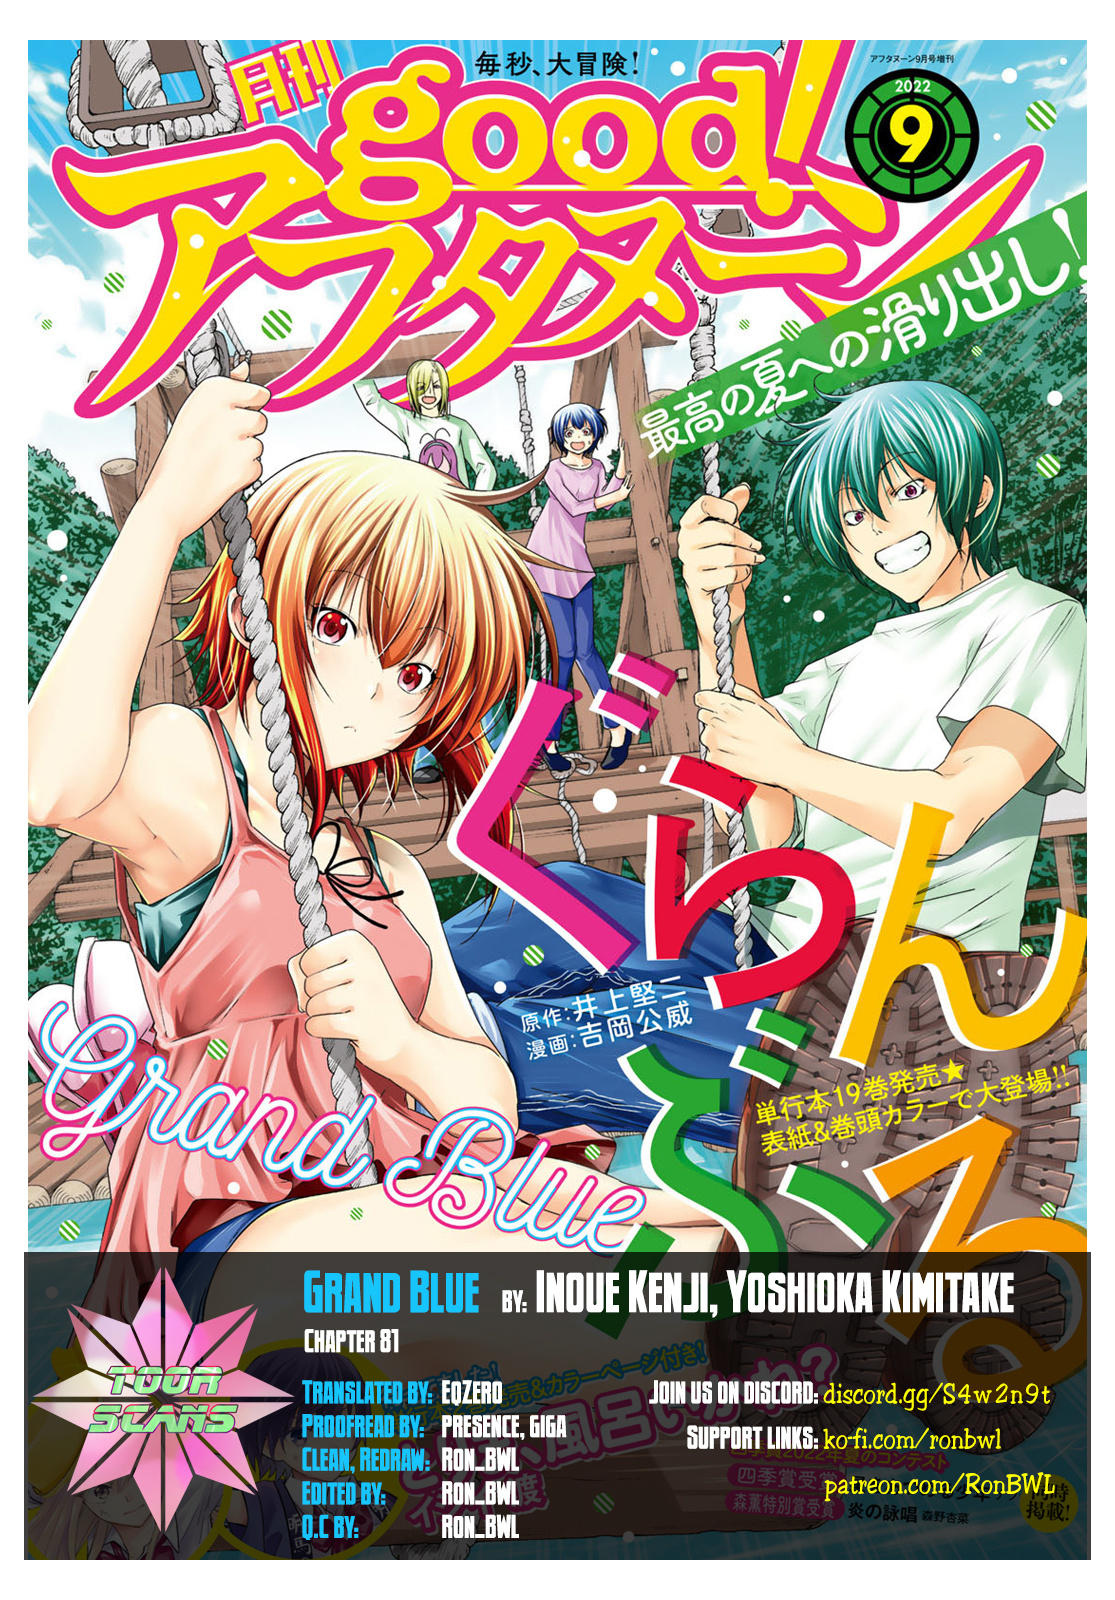 Grand Blue Dreaming Manga Volume 18